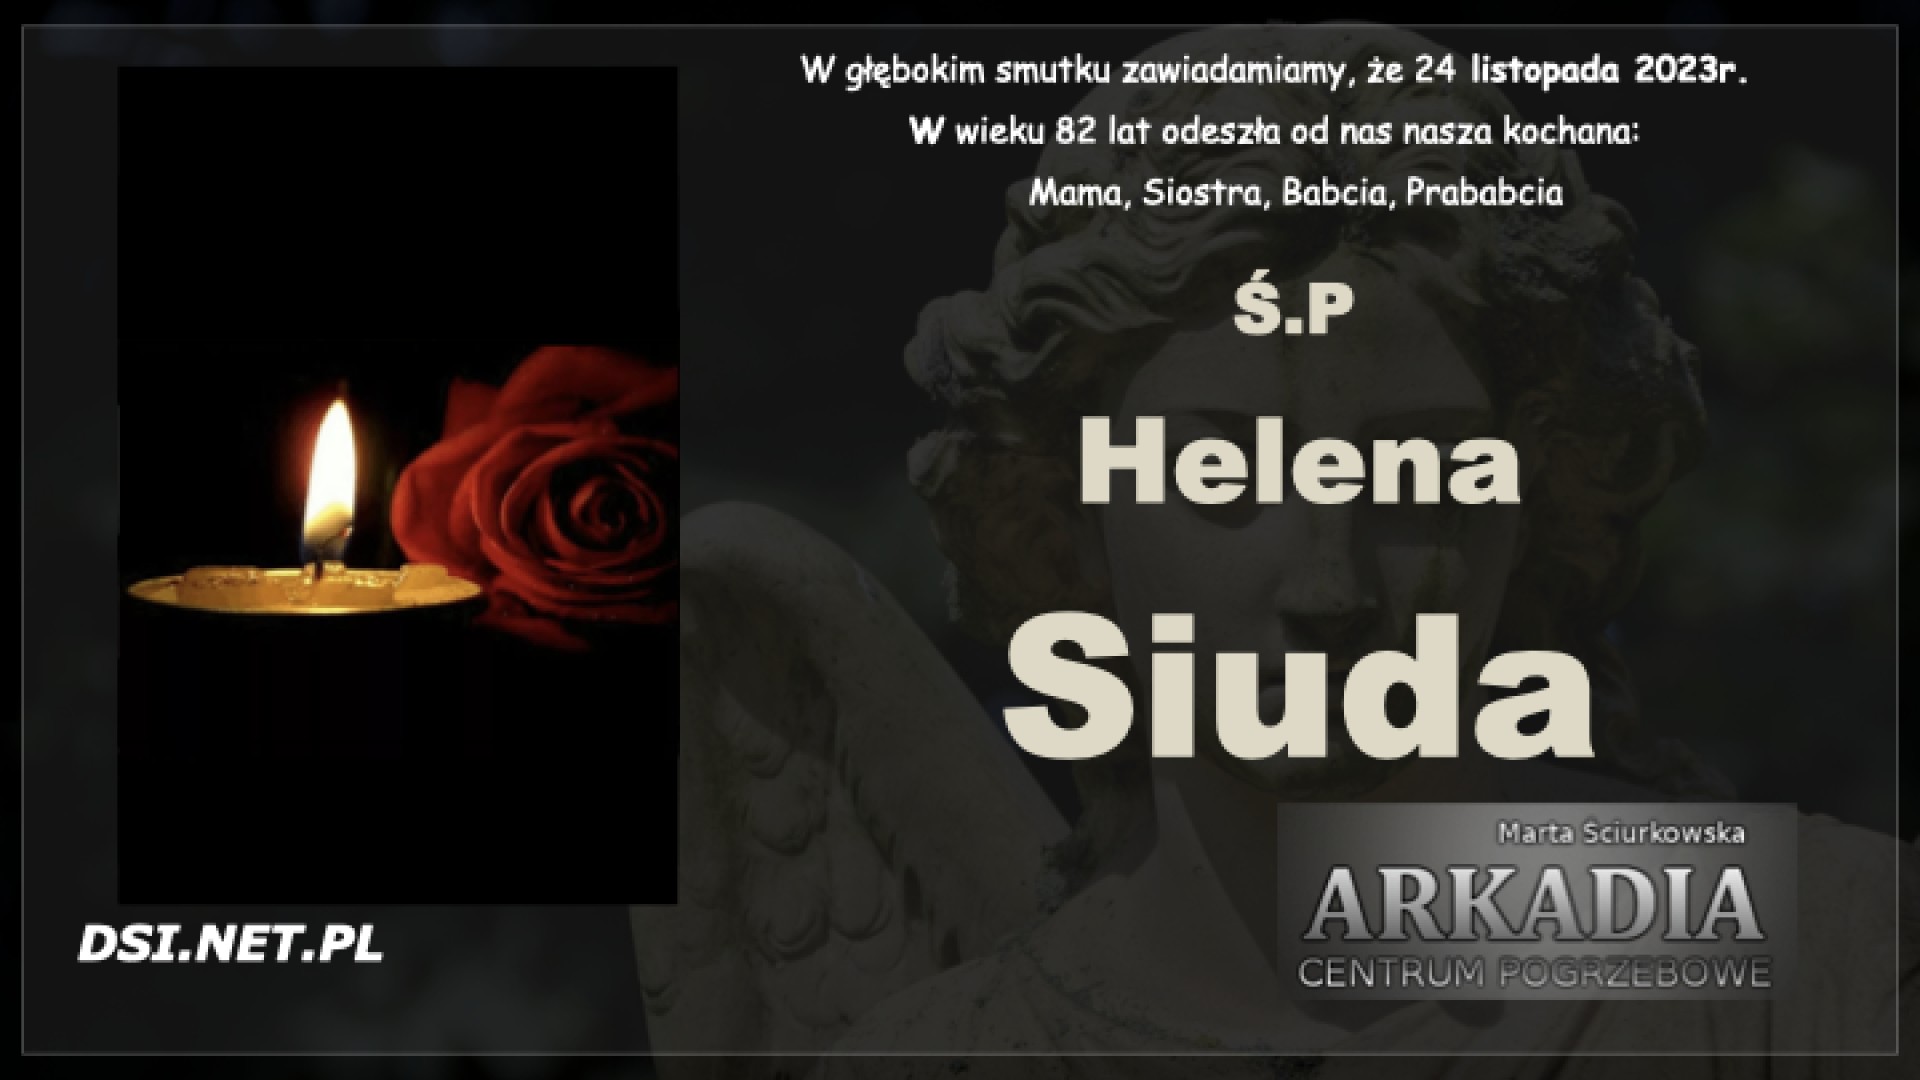 Ś.P. Helena Siuda